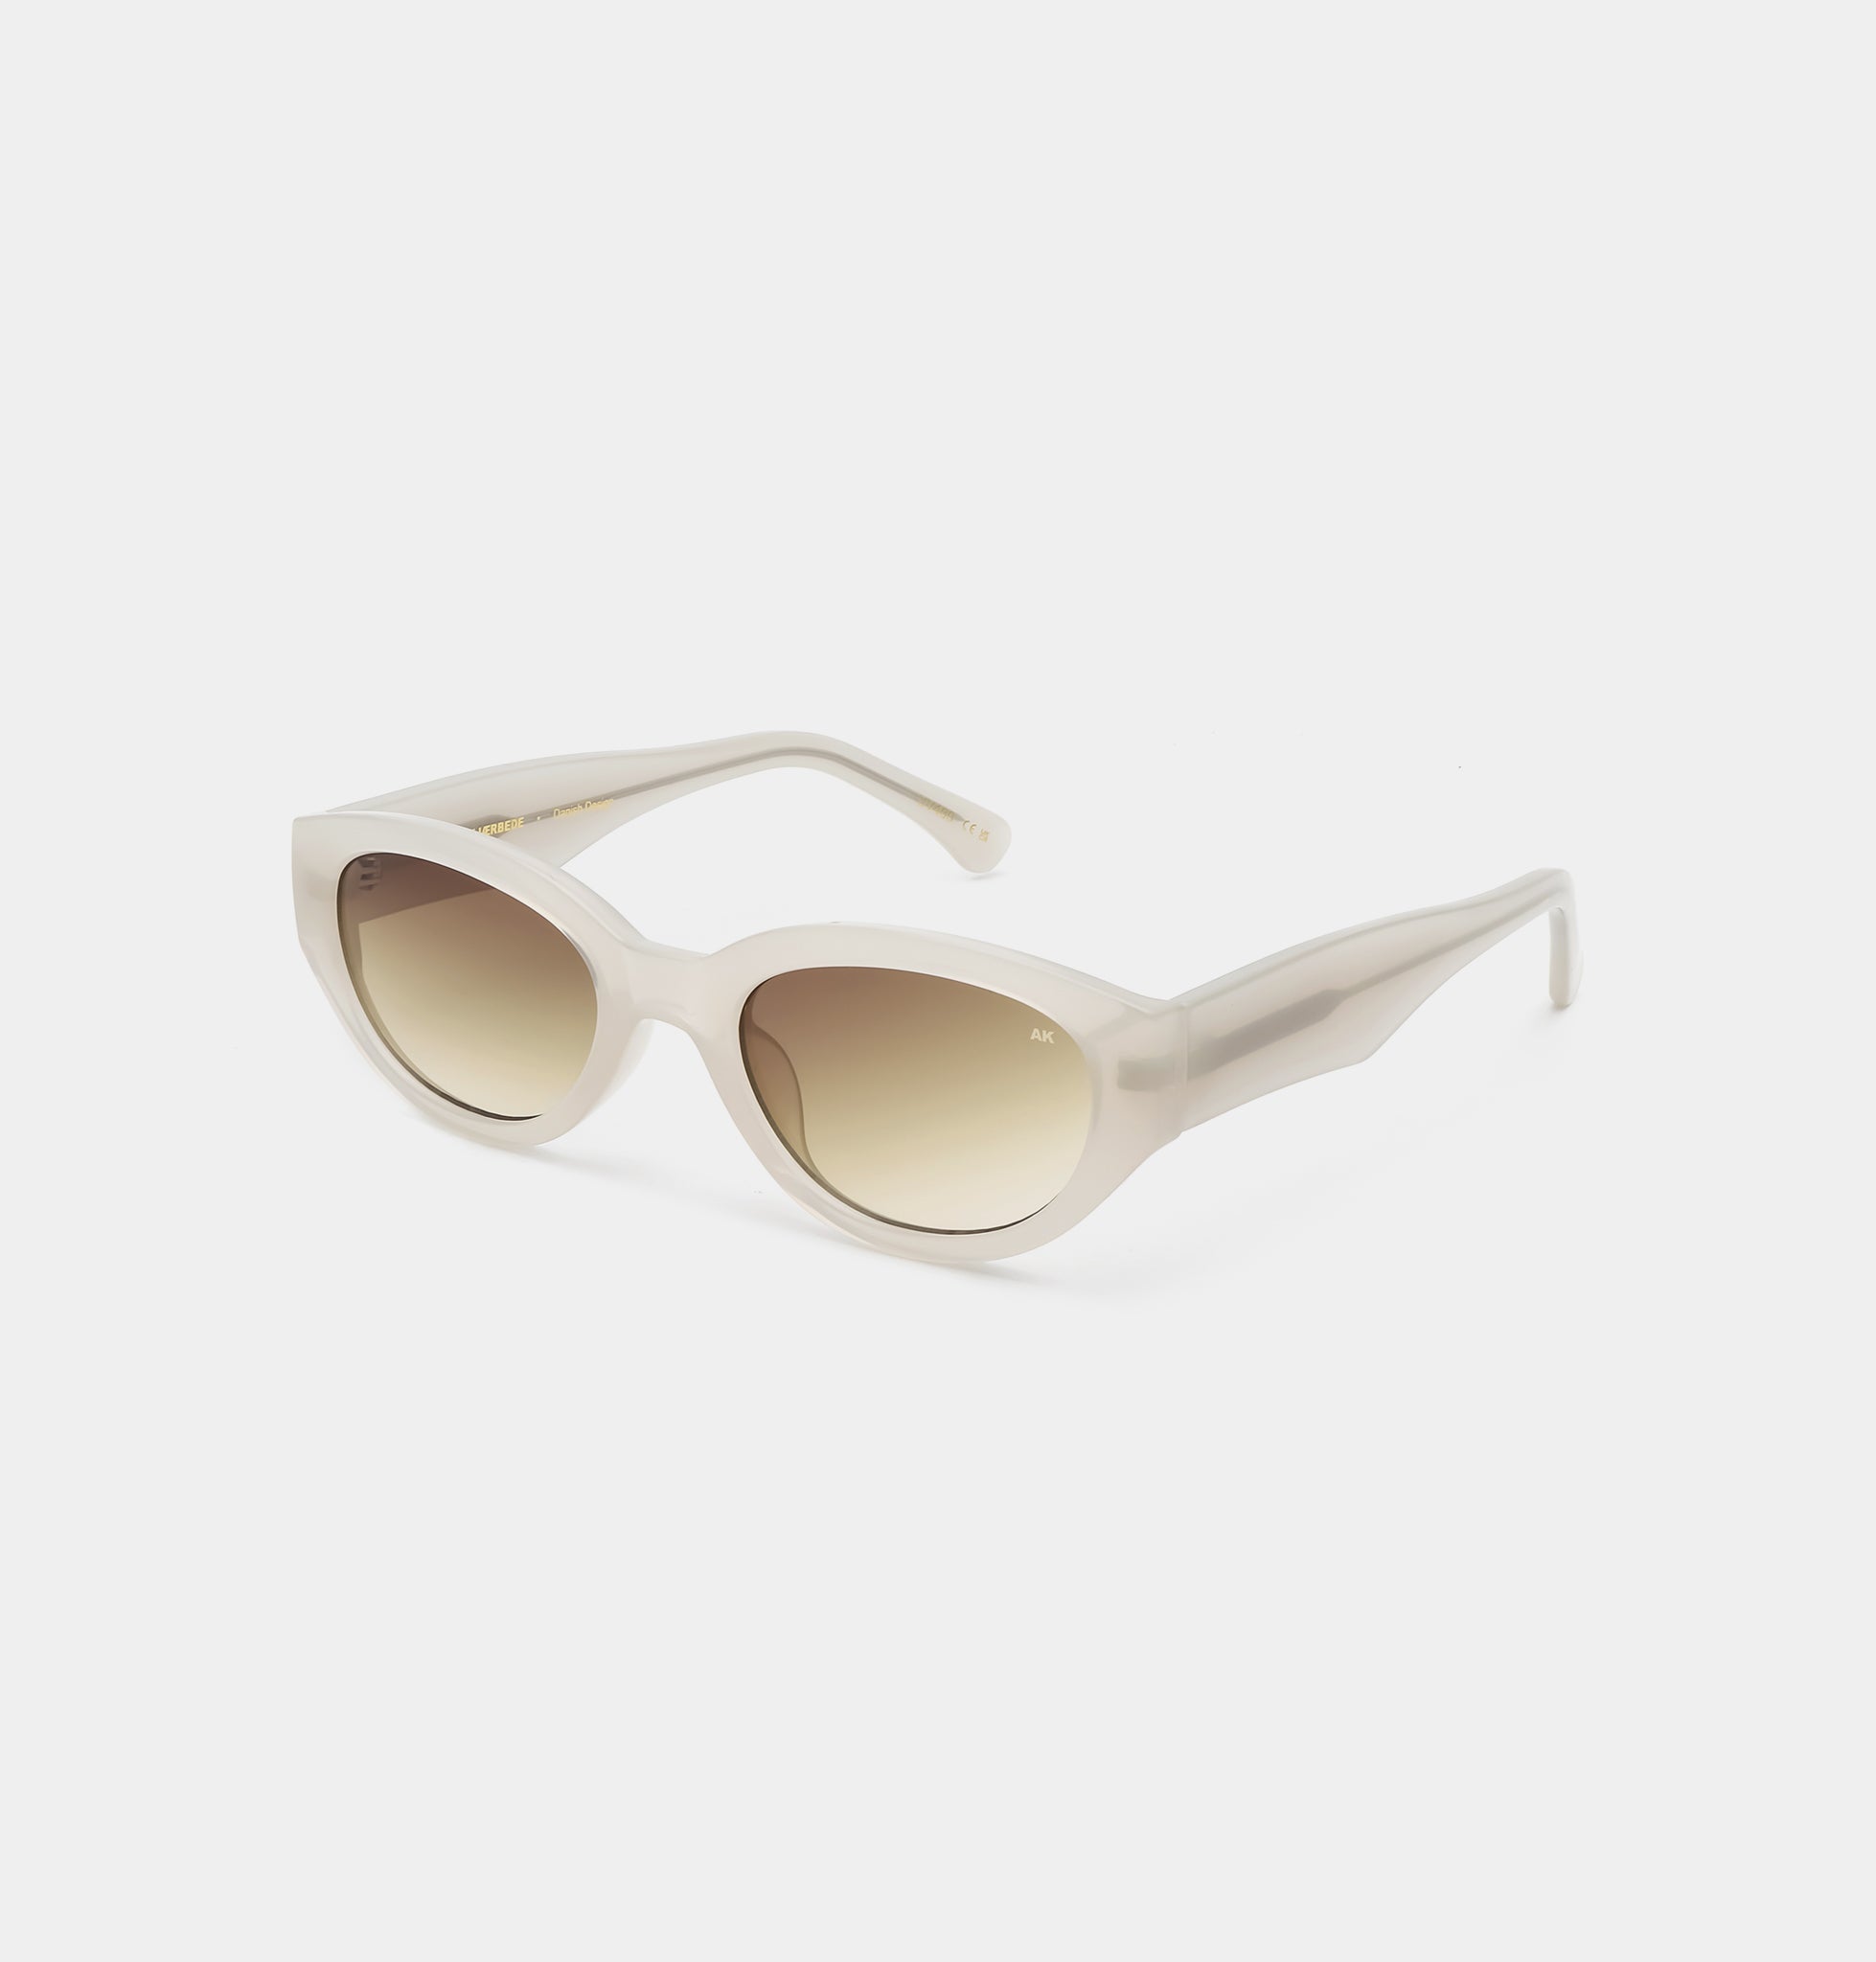 Winnie sunglasses in cream bone